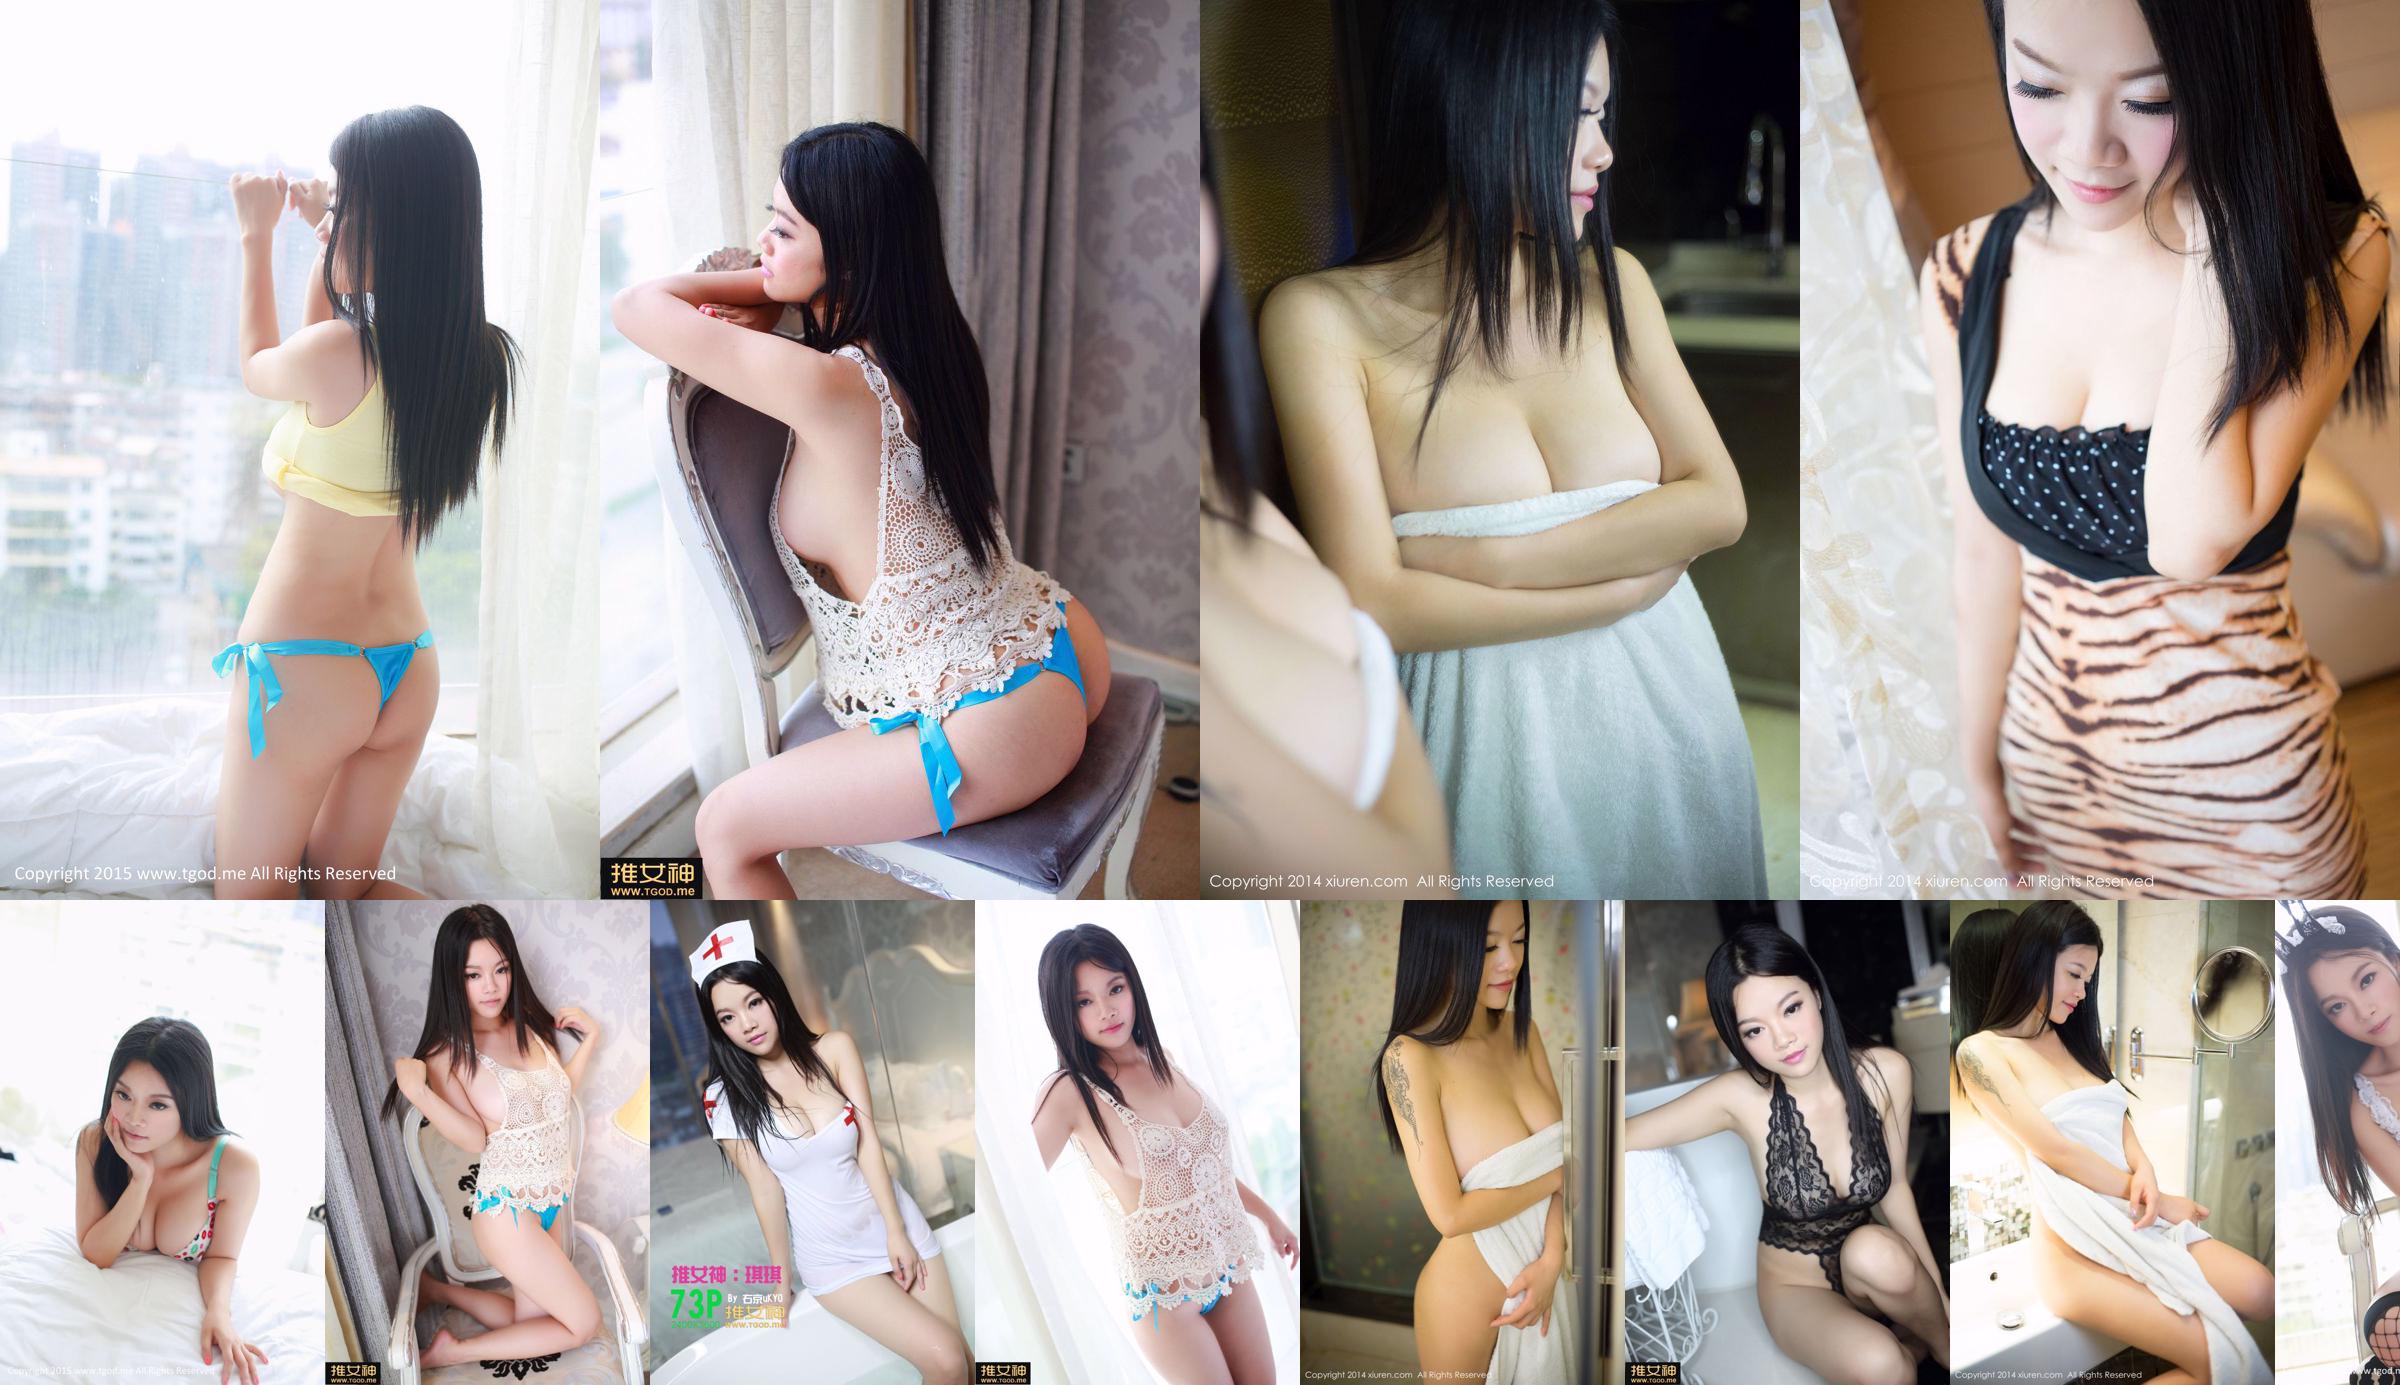 Bunny girl Qiqi Qiqi "Youth Sexy" uniform temptation [TGOD Push Goddess] No.bc2da5 Page 22